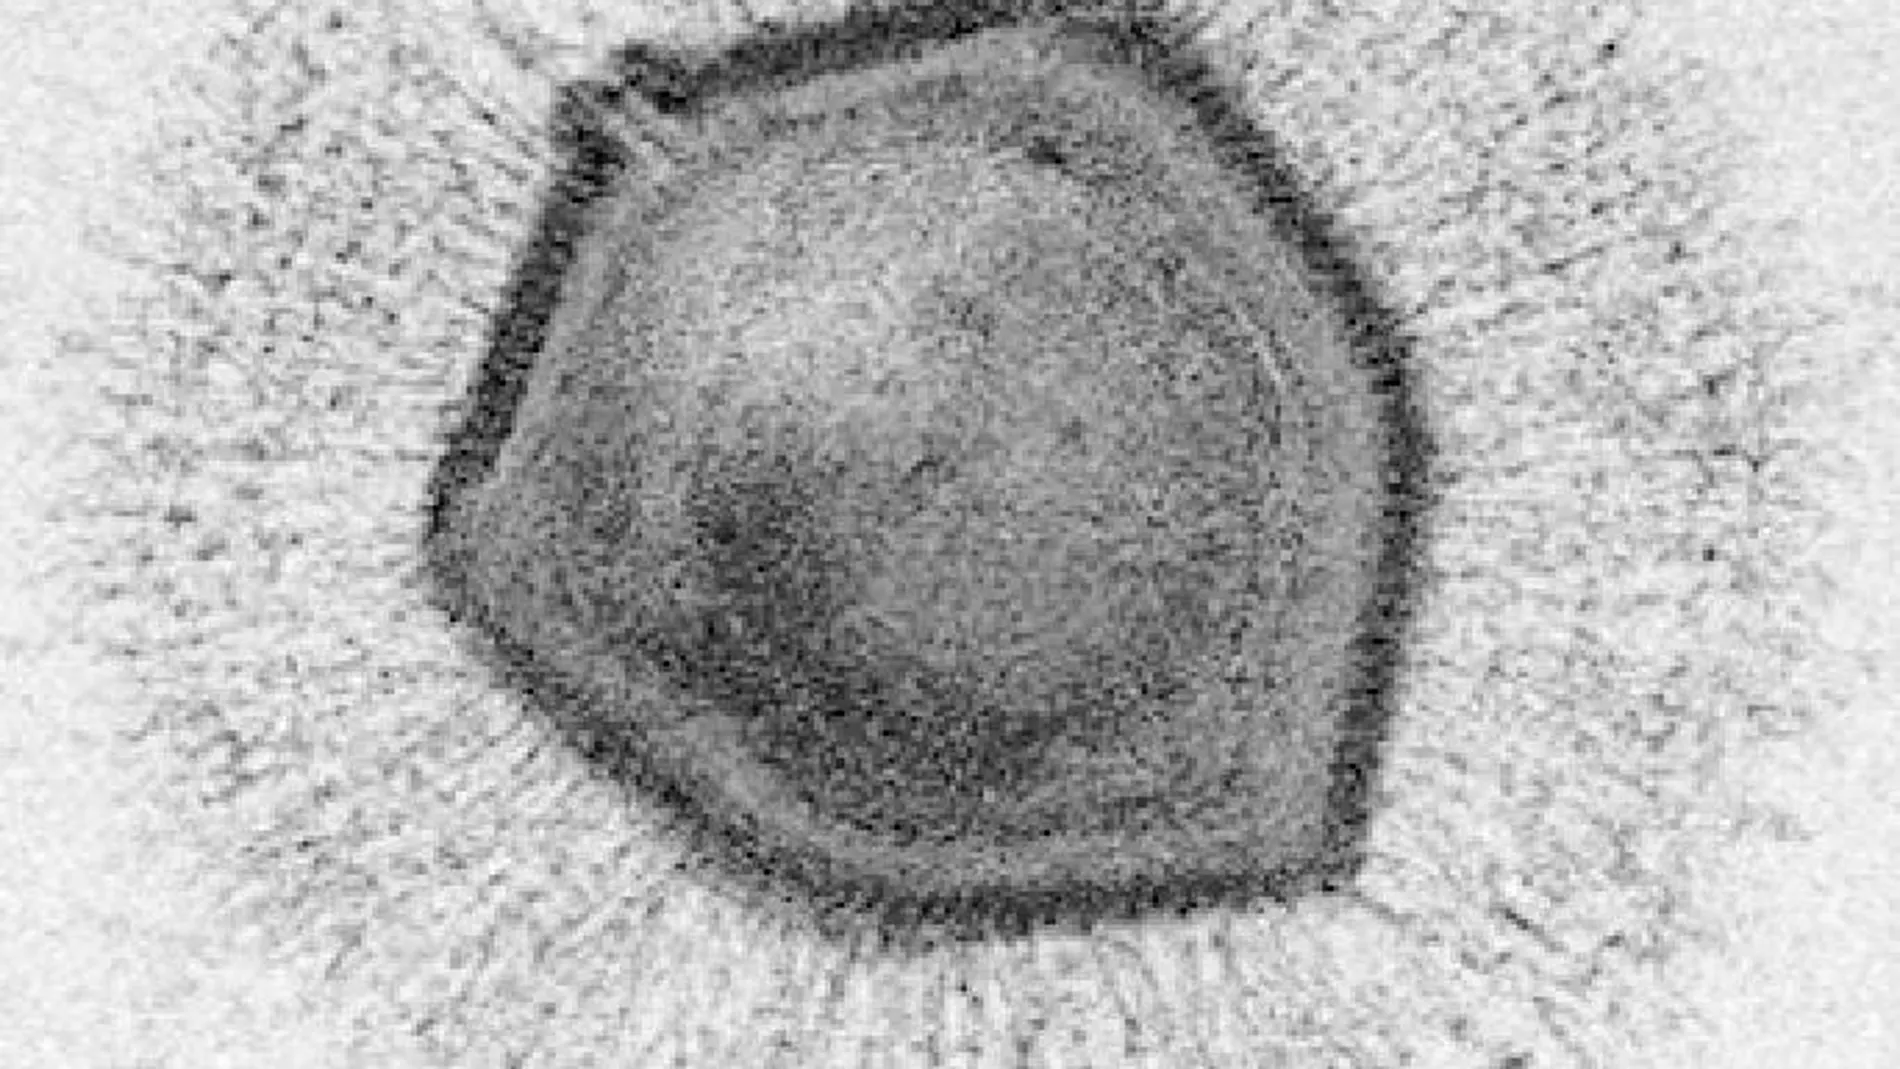 Una imagen del virus gigante Mimivirus, en la que se aprecia que su tamaño es comparable al de una bacteria.